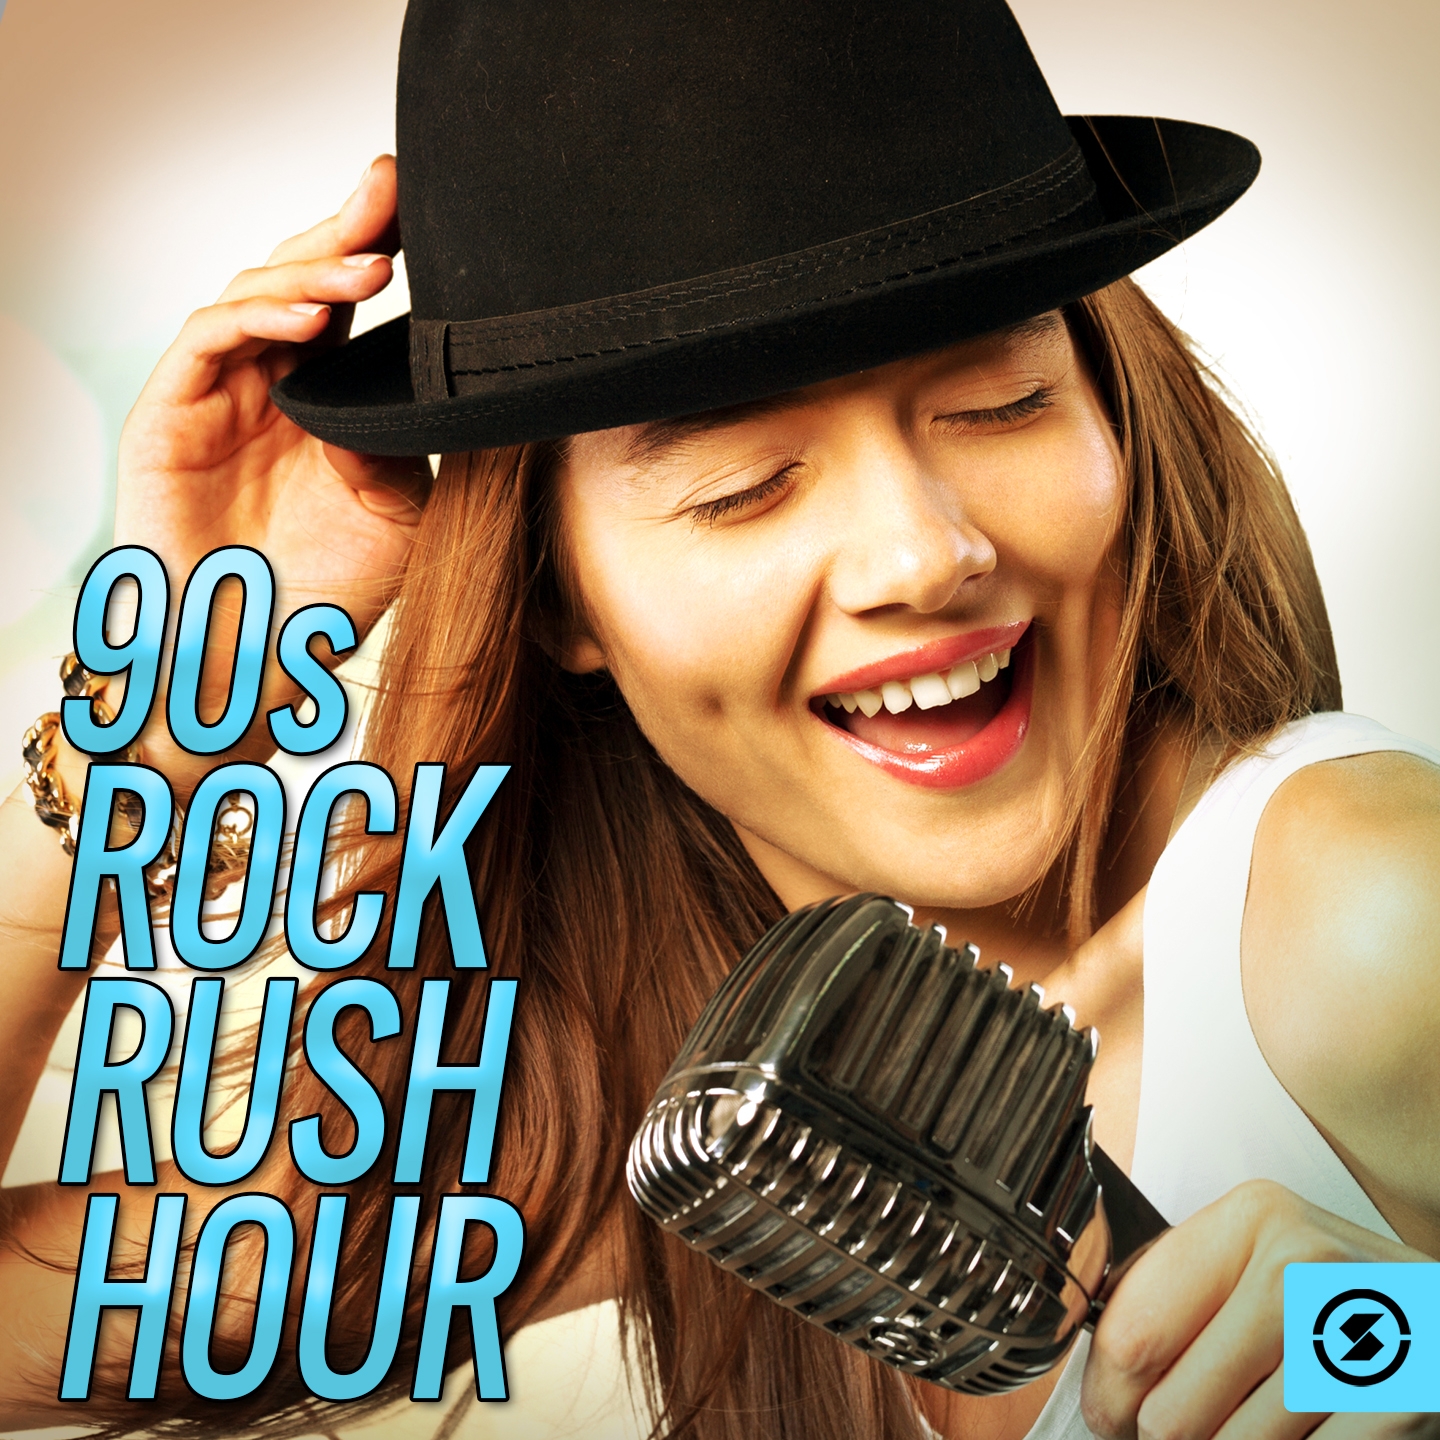 90s Rock Rush Hour